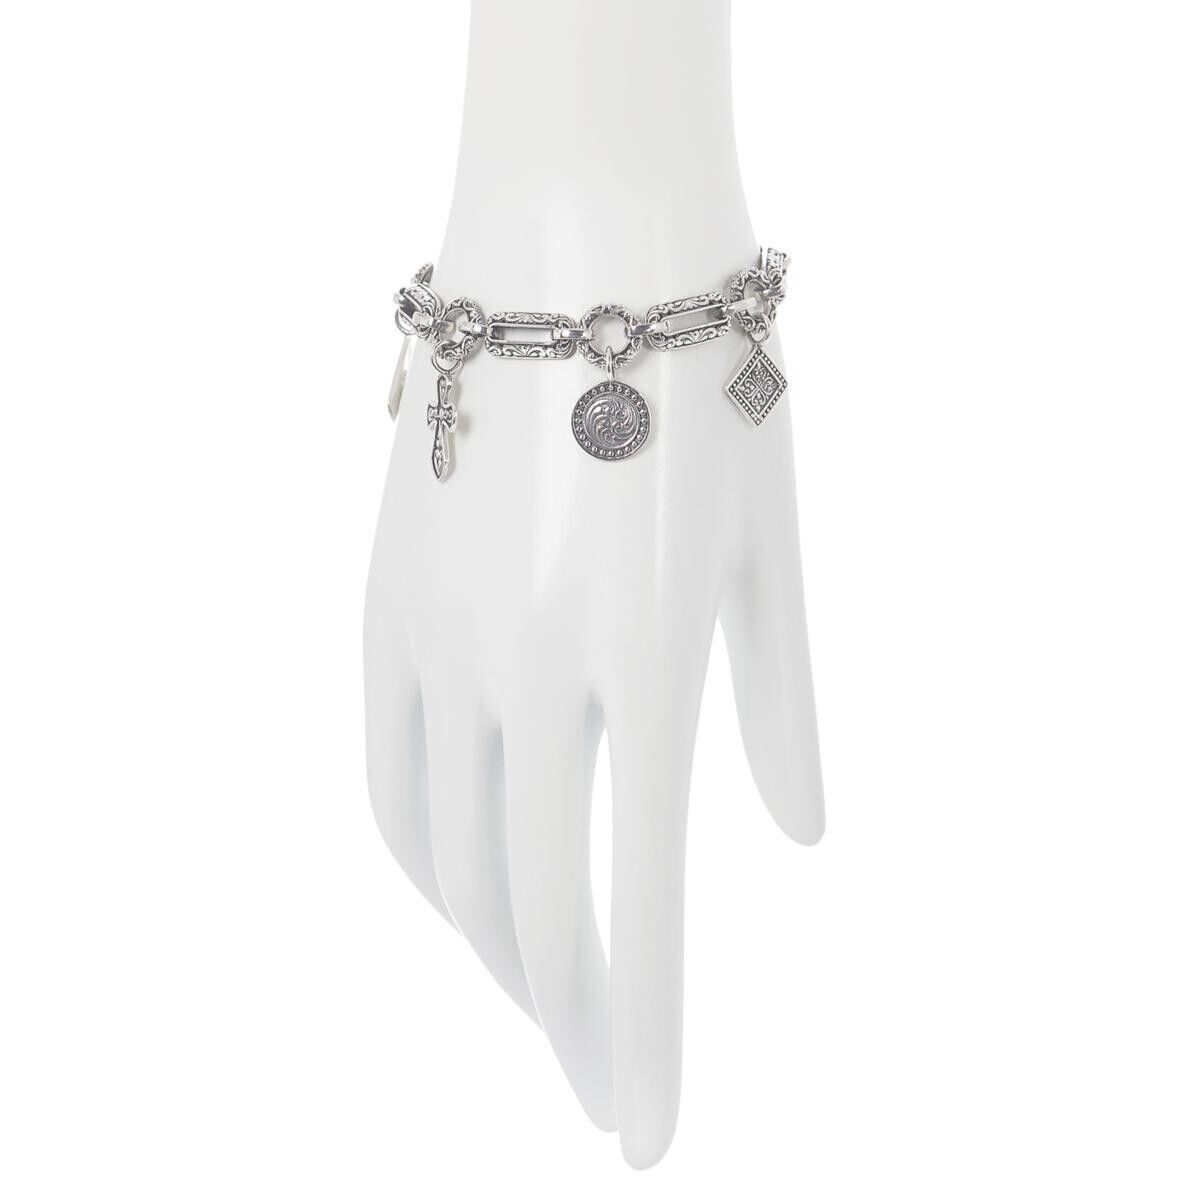 Bali RoManse Sterling Silver Charm Bracelet. 7-1/4" (374704732198)